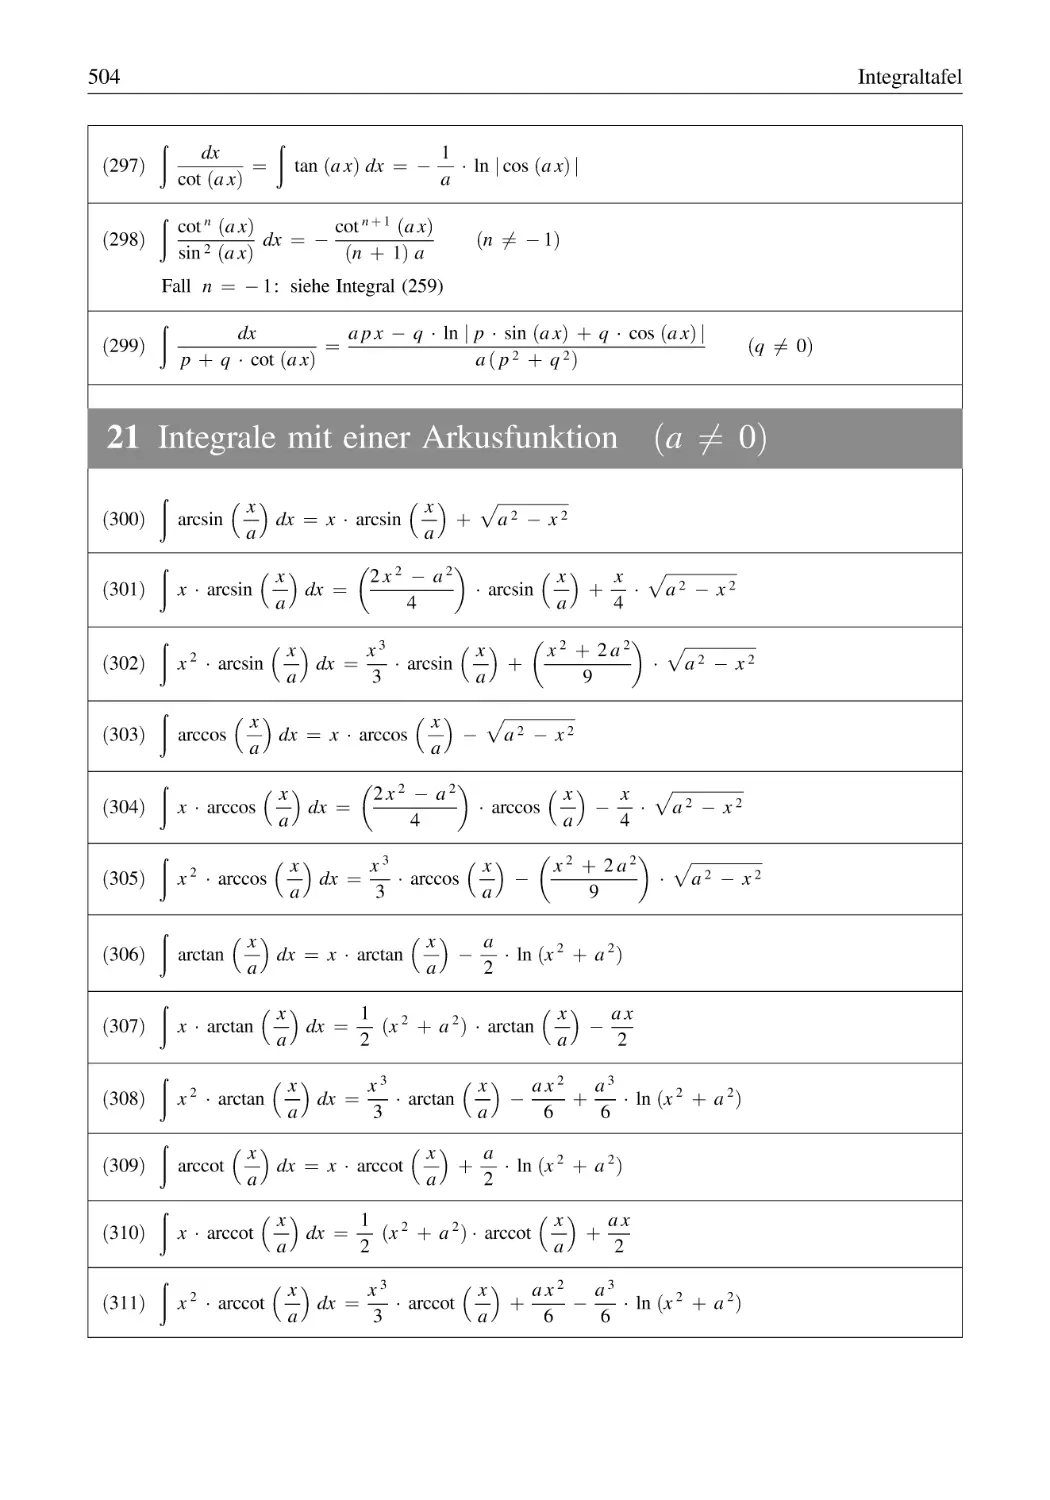 21 Integrale mit einer Arkusfunktion (a ≠ 0)